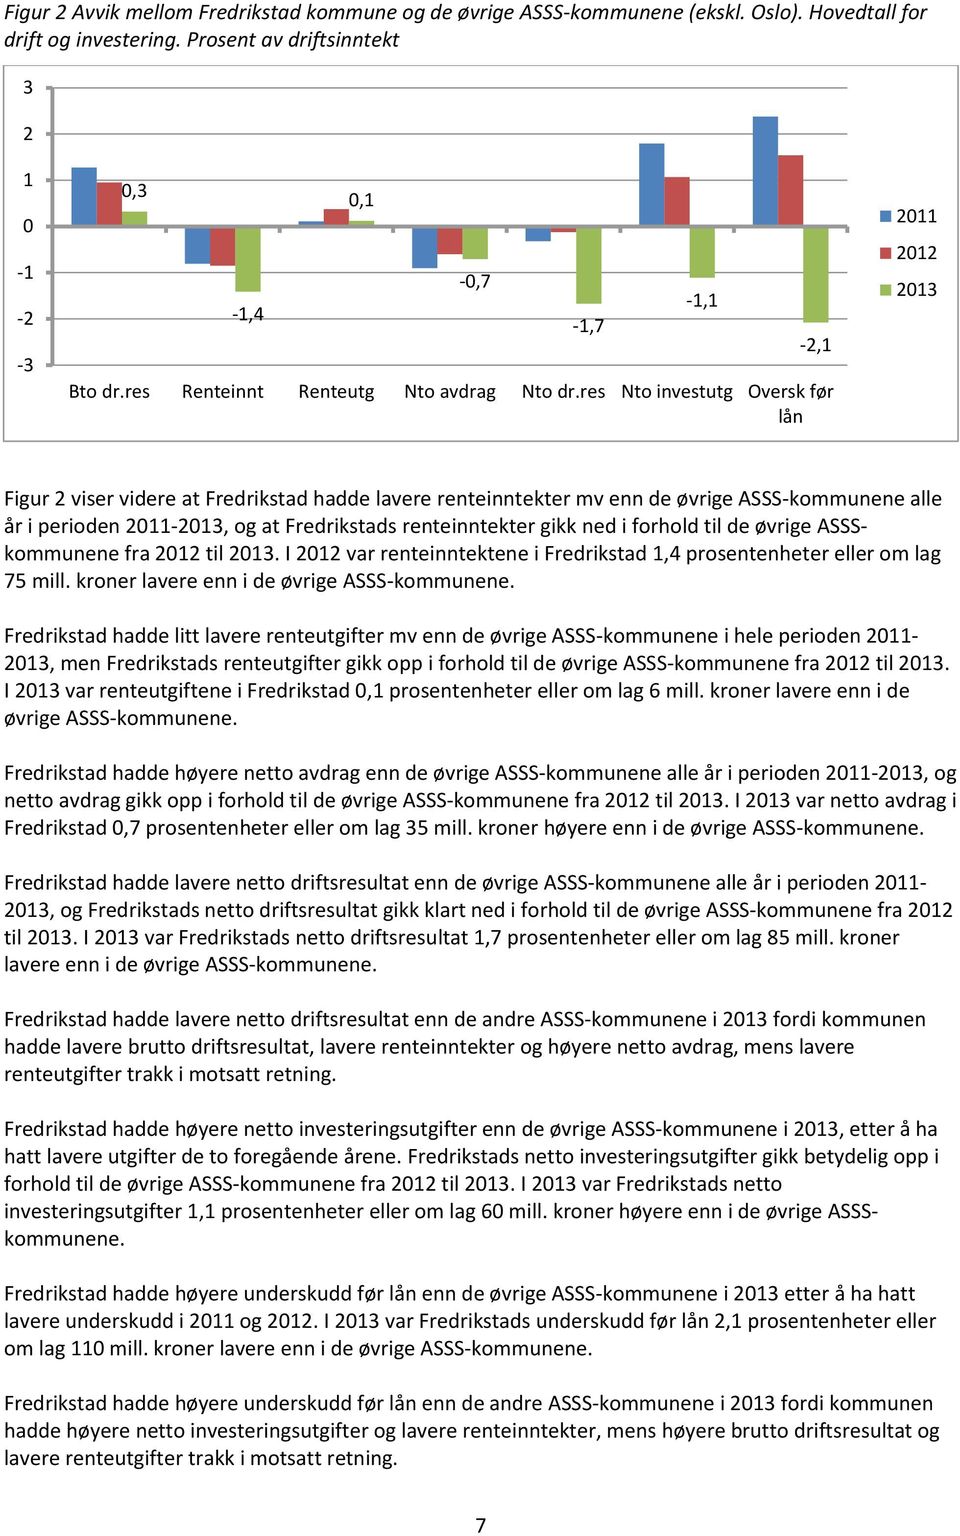 res Nto investutg Oversk før lån -0,7-1,7-1,1-2,1 2011 2012 2013 Figur 2 viser videre at Fredrikstad hadde lavere renteinntekter mv enn de øvrige ASSS-kommunene alle år i perioden 2011-2013, og at